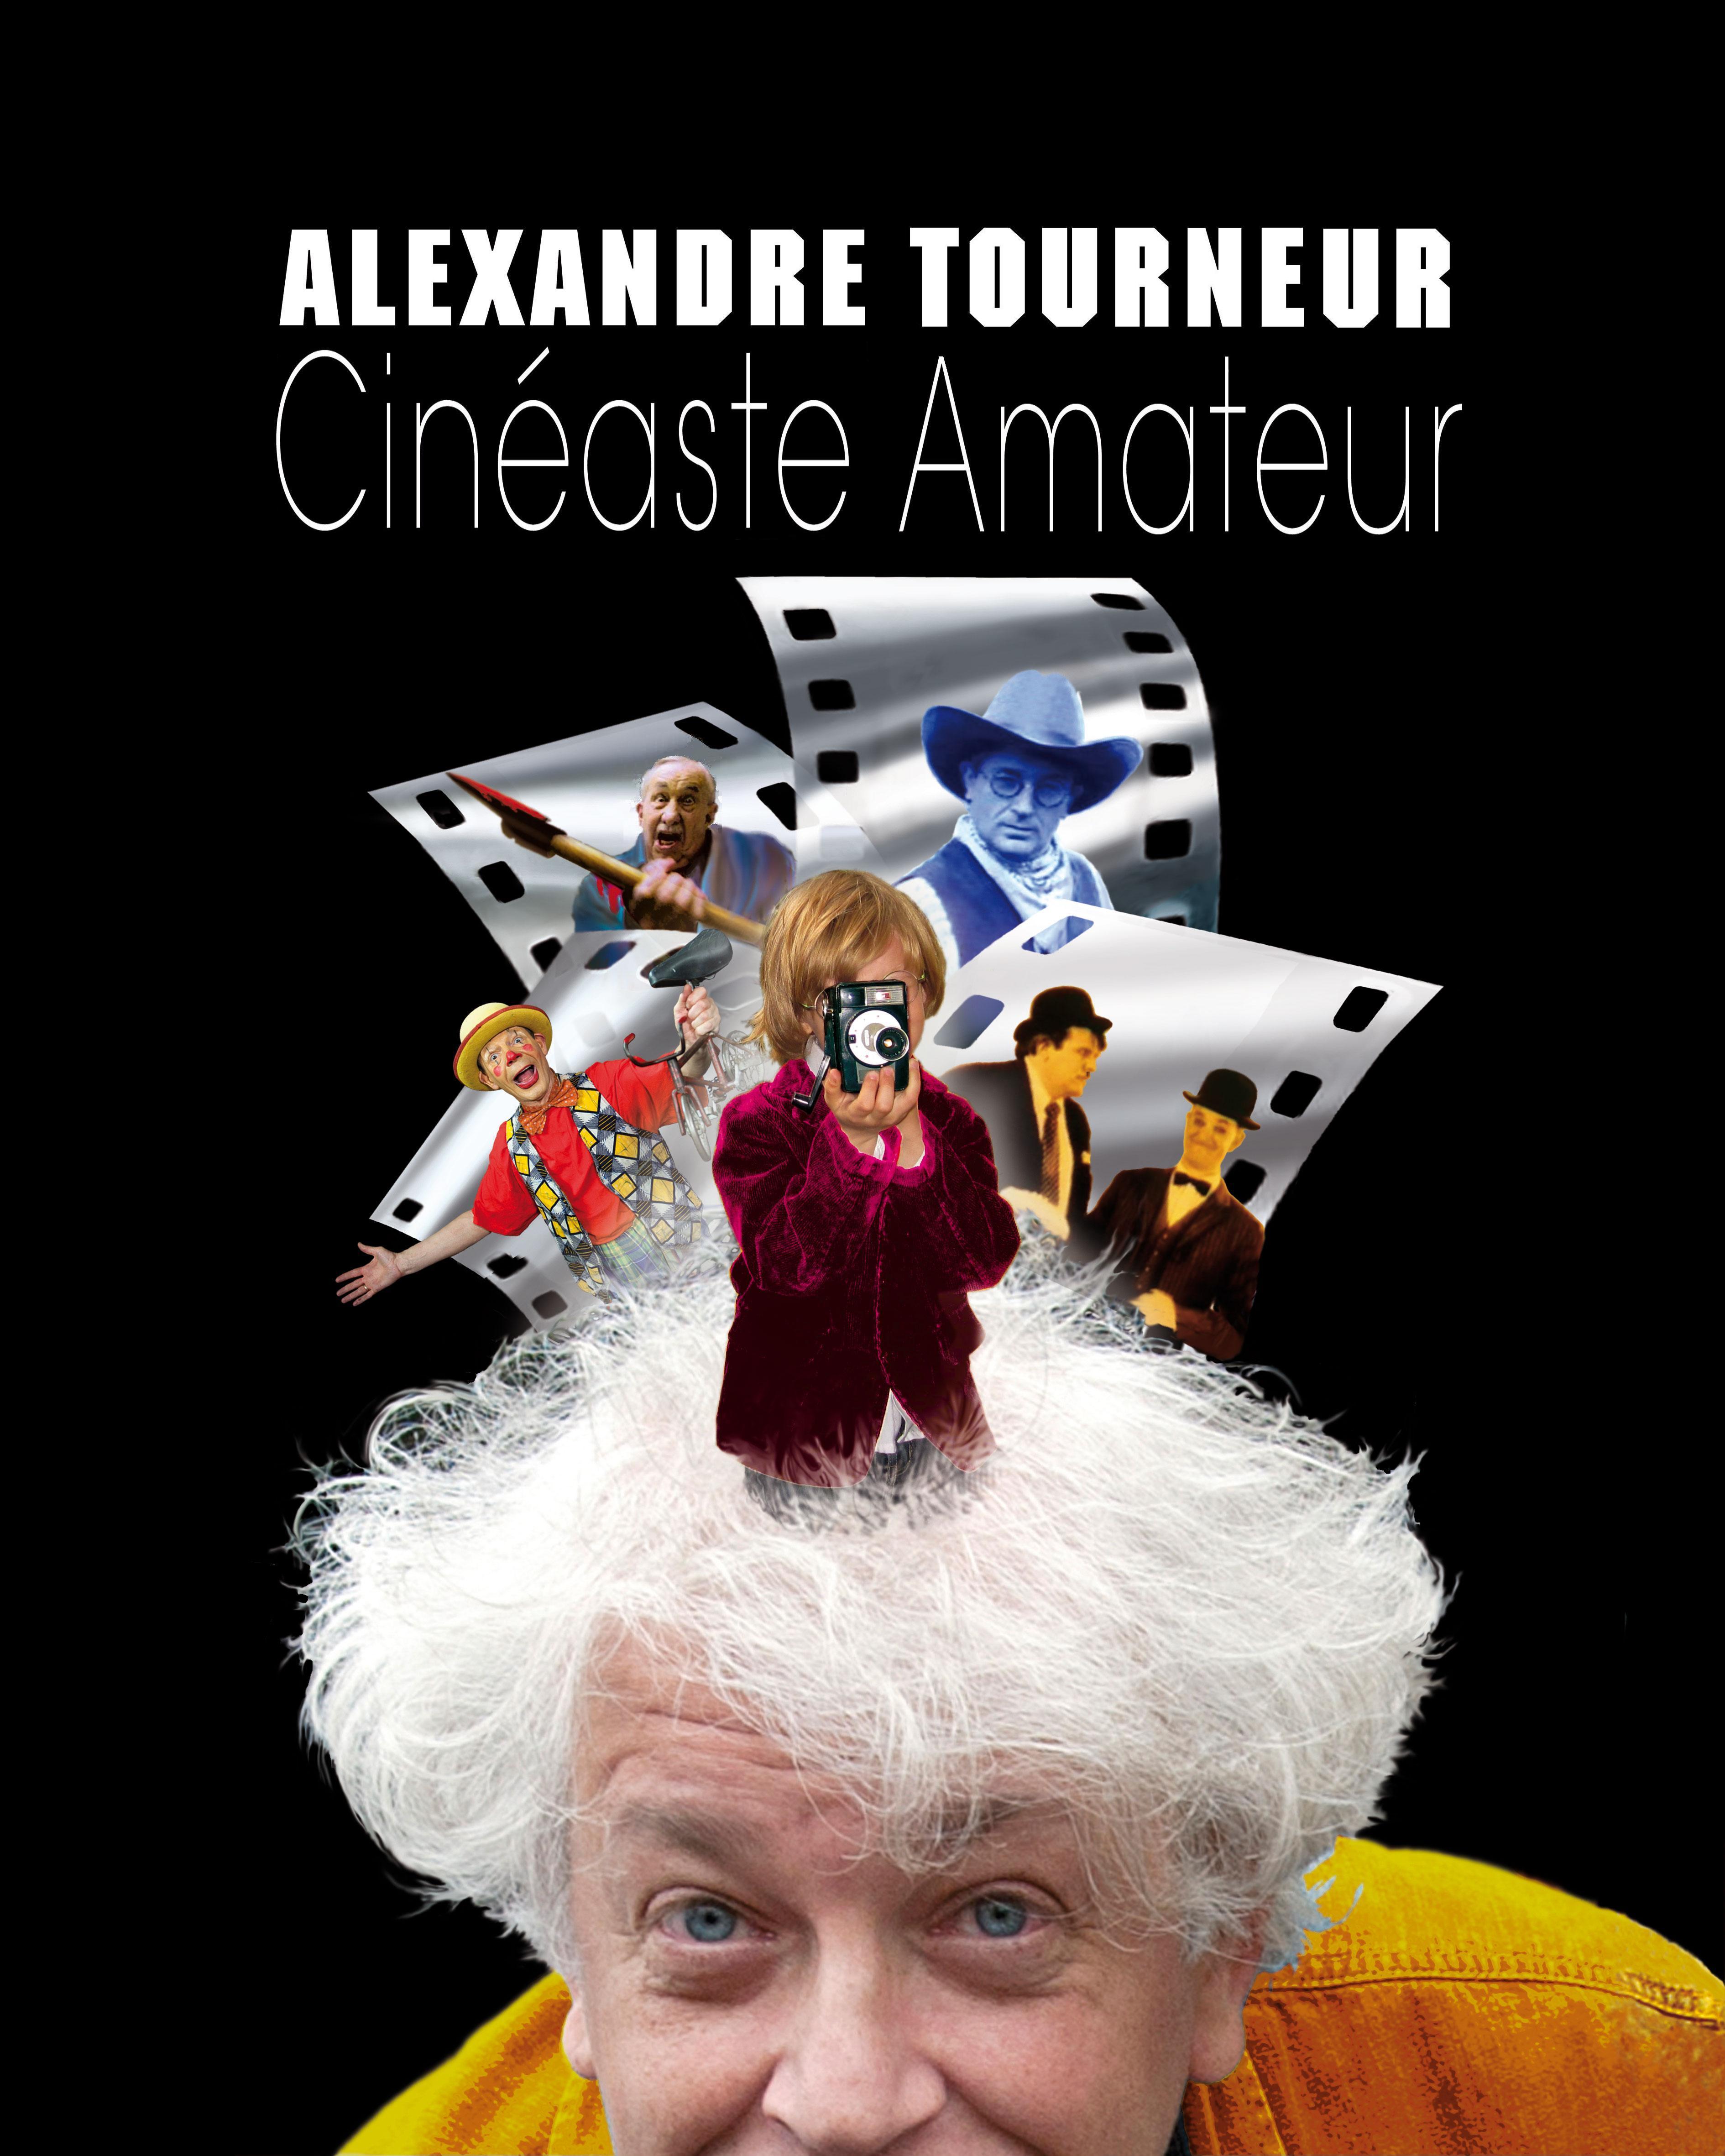 Alexandre Tourneur cinéaste amateur, un film de Herve GANEM sortie prévue le 12 12 2012